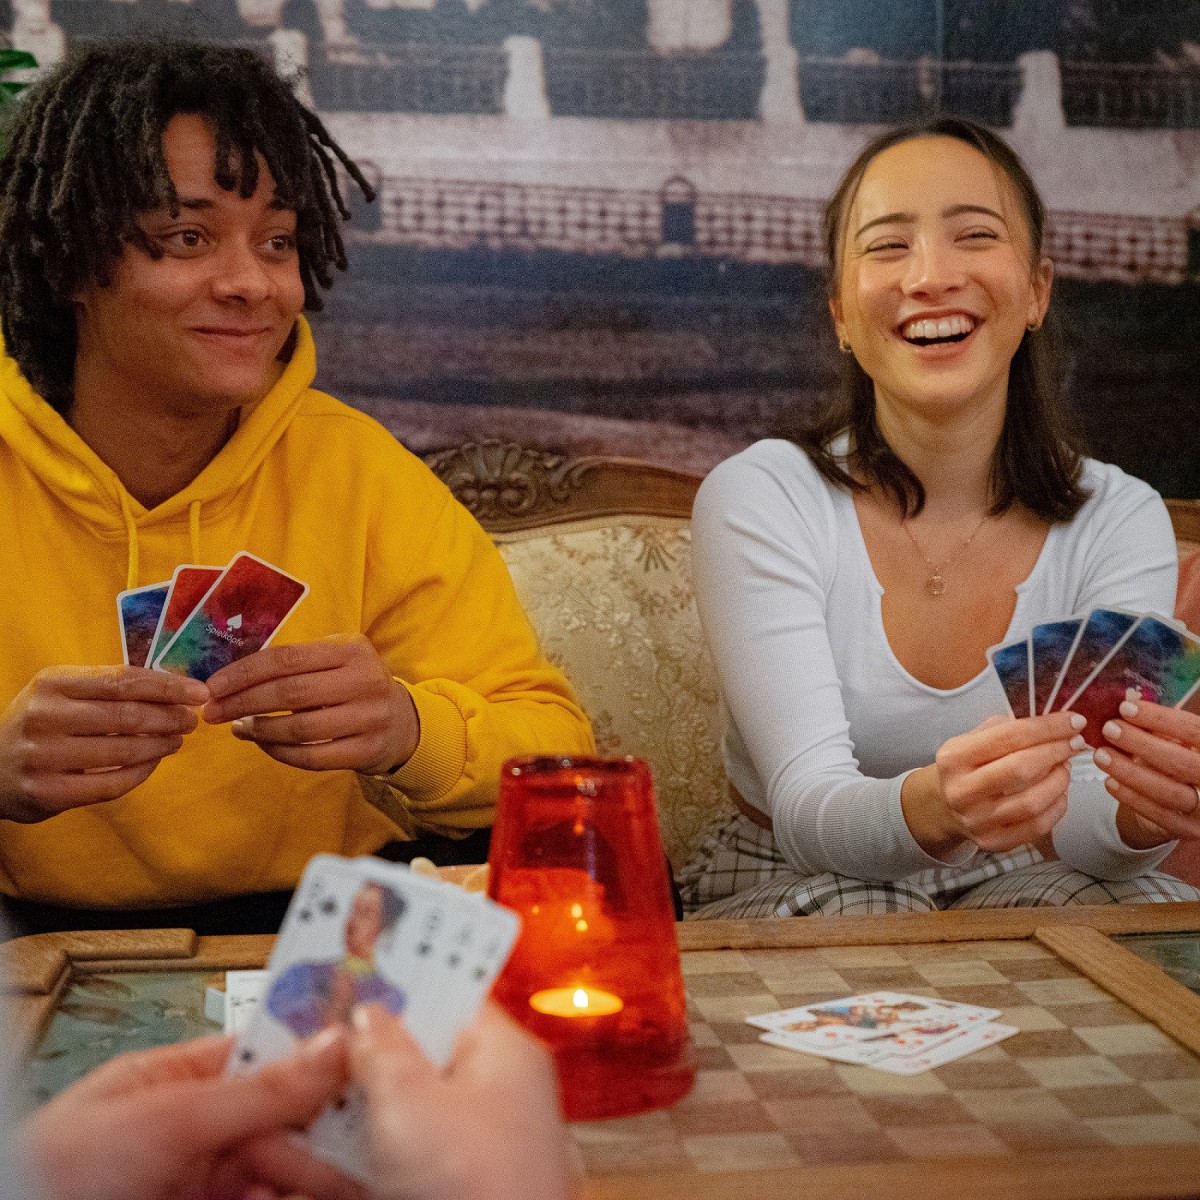 Spielköpfe Spielkarten - Skat - Das gendergerechte Kartendeck